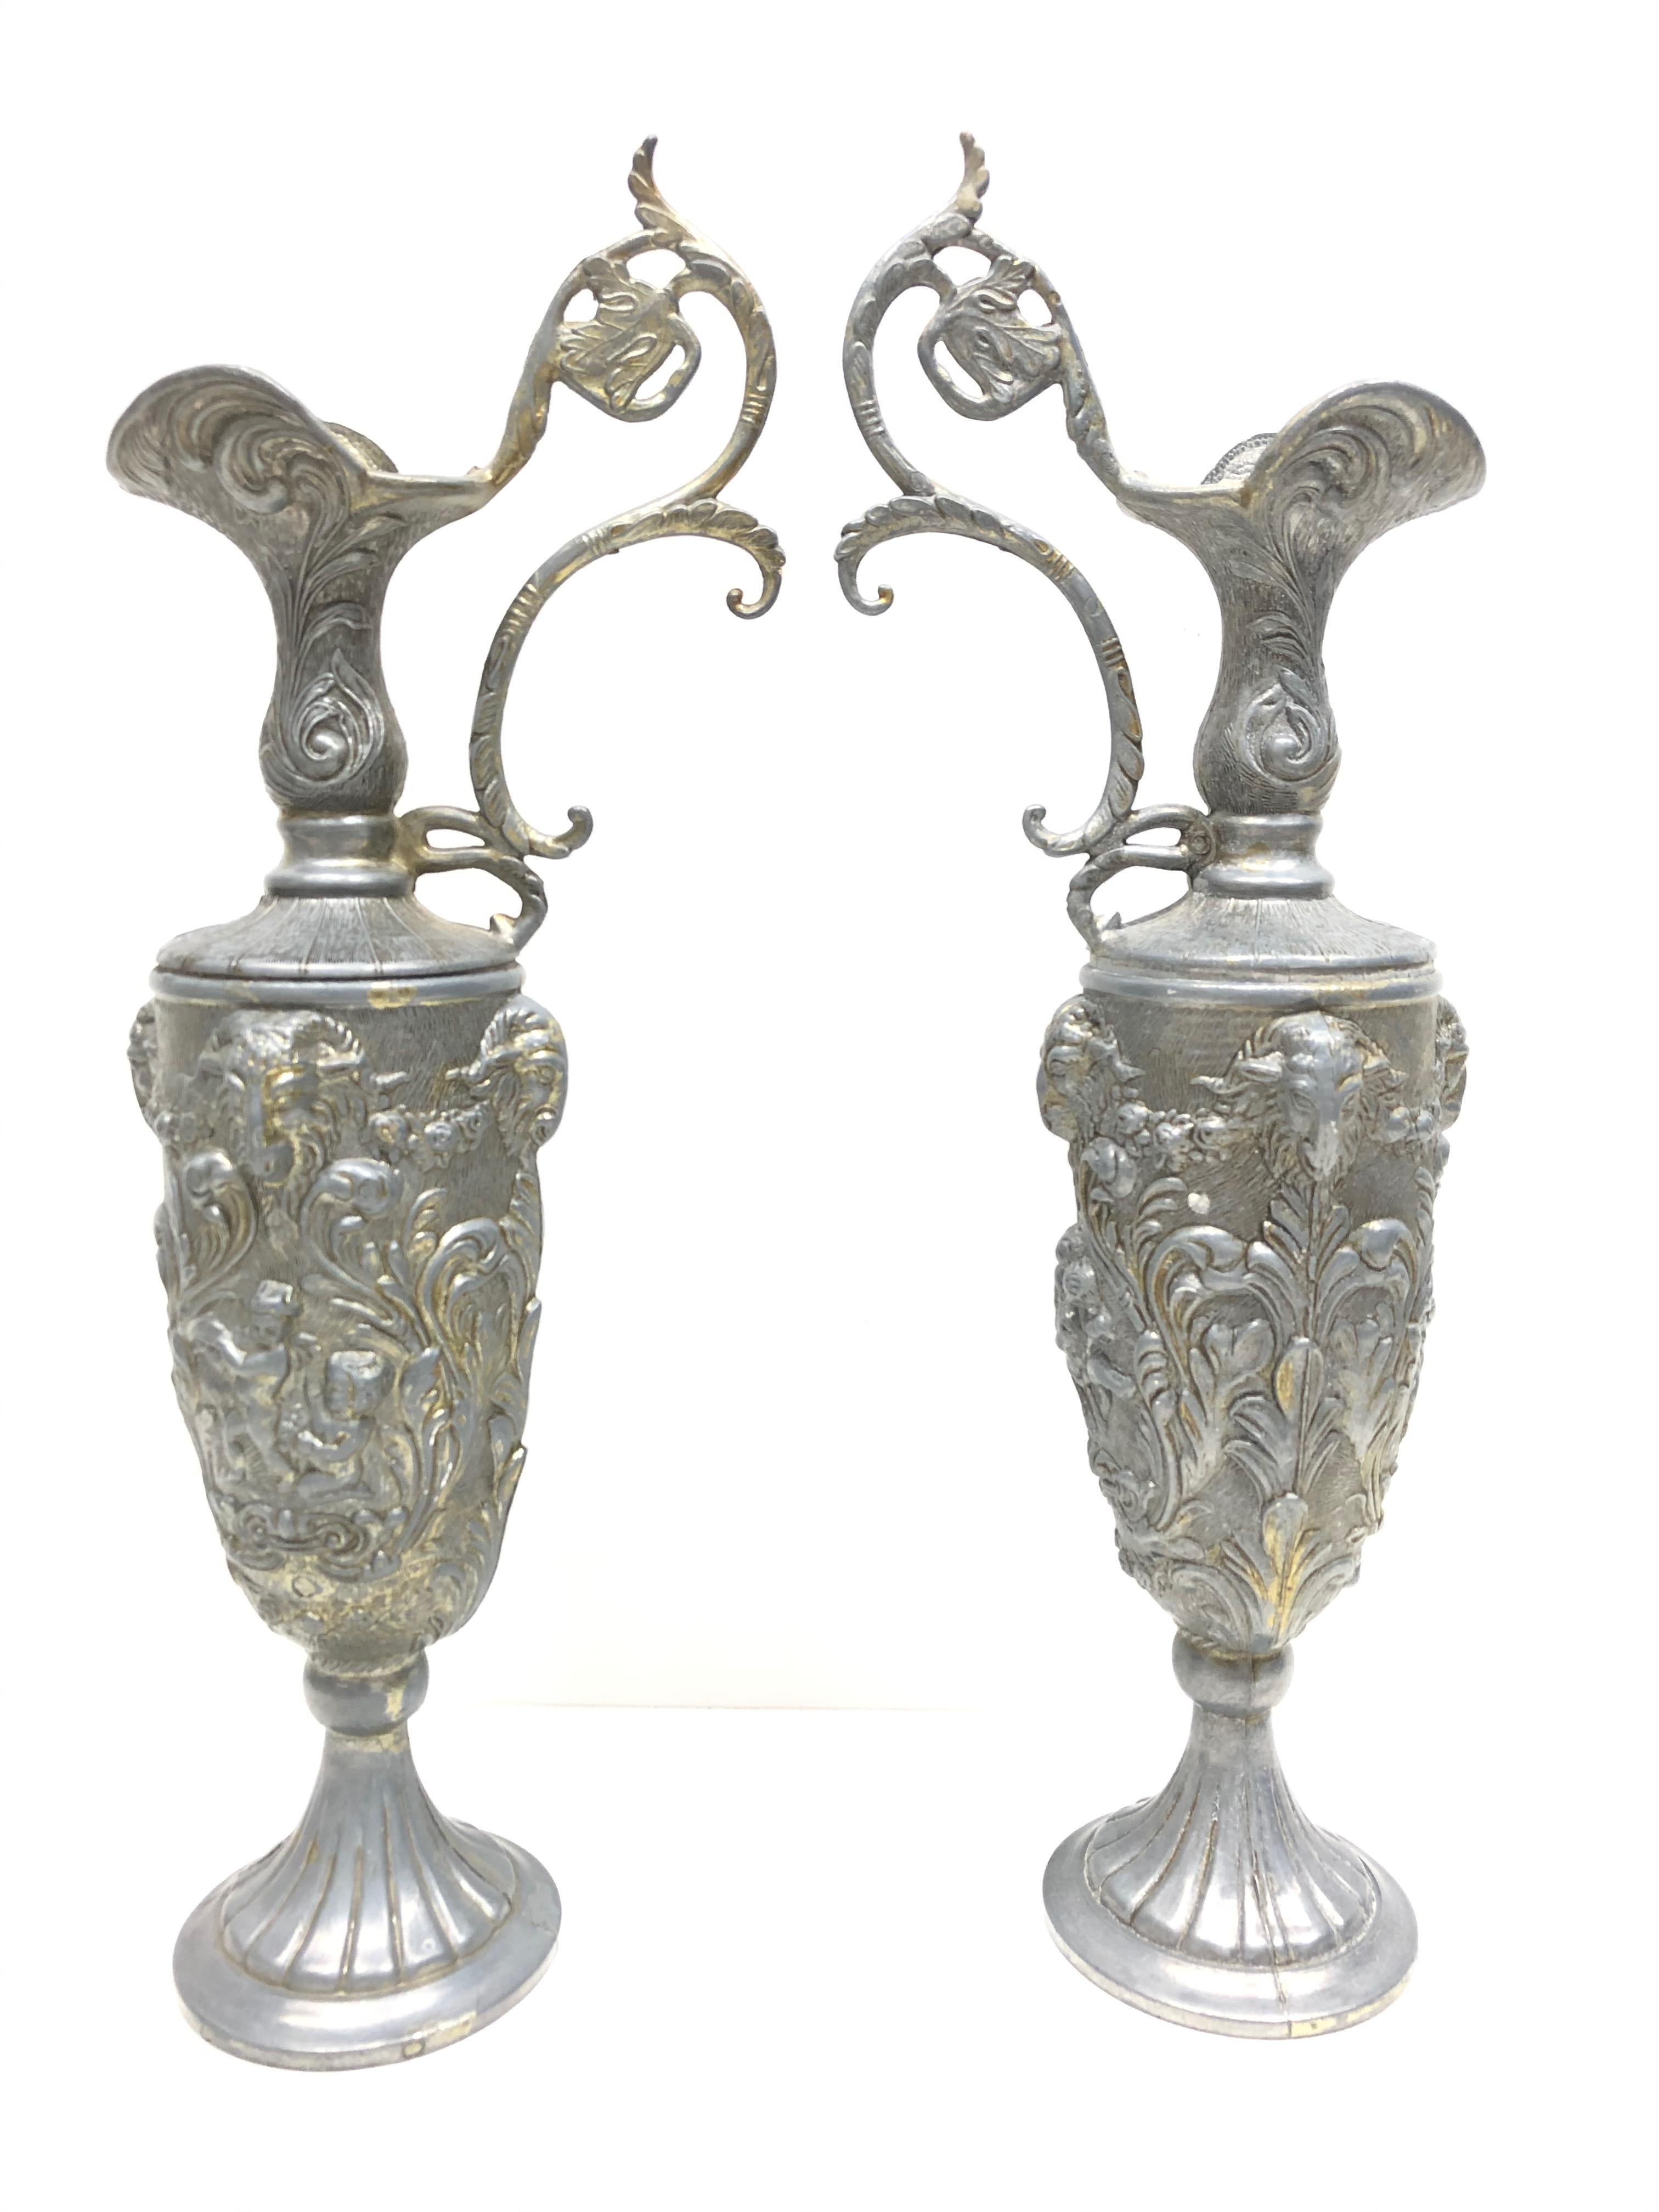 Ein Paar große, erstaunliche Zinnvasen, Ewer oder Amphoren aus Italien. Die Vasen sind in sehr gutem Zustand und haben eine schöne Patina. Markiert auf der Unterseite 90% peltrato.